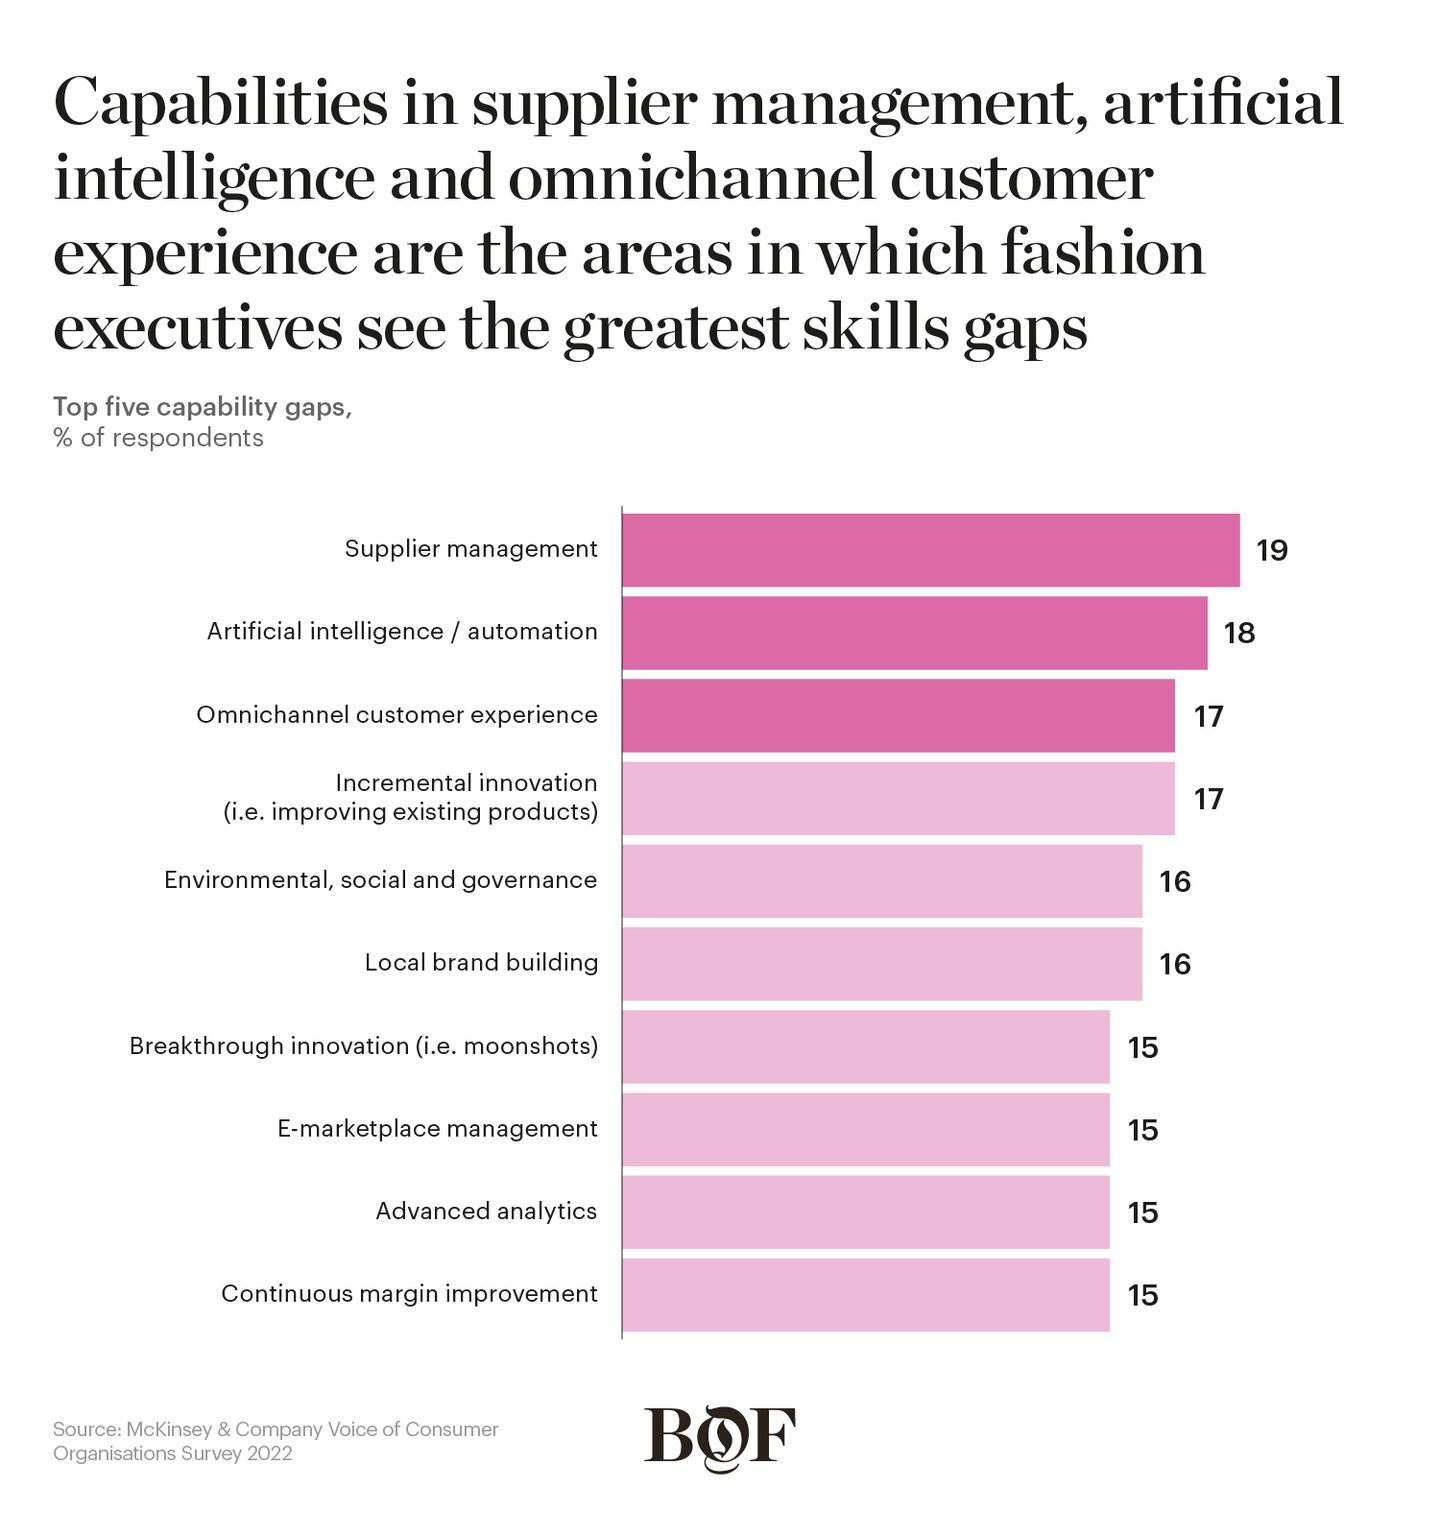 Top five capacity gaps